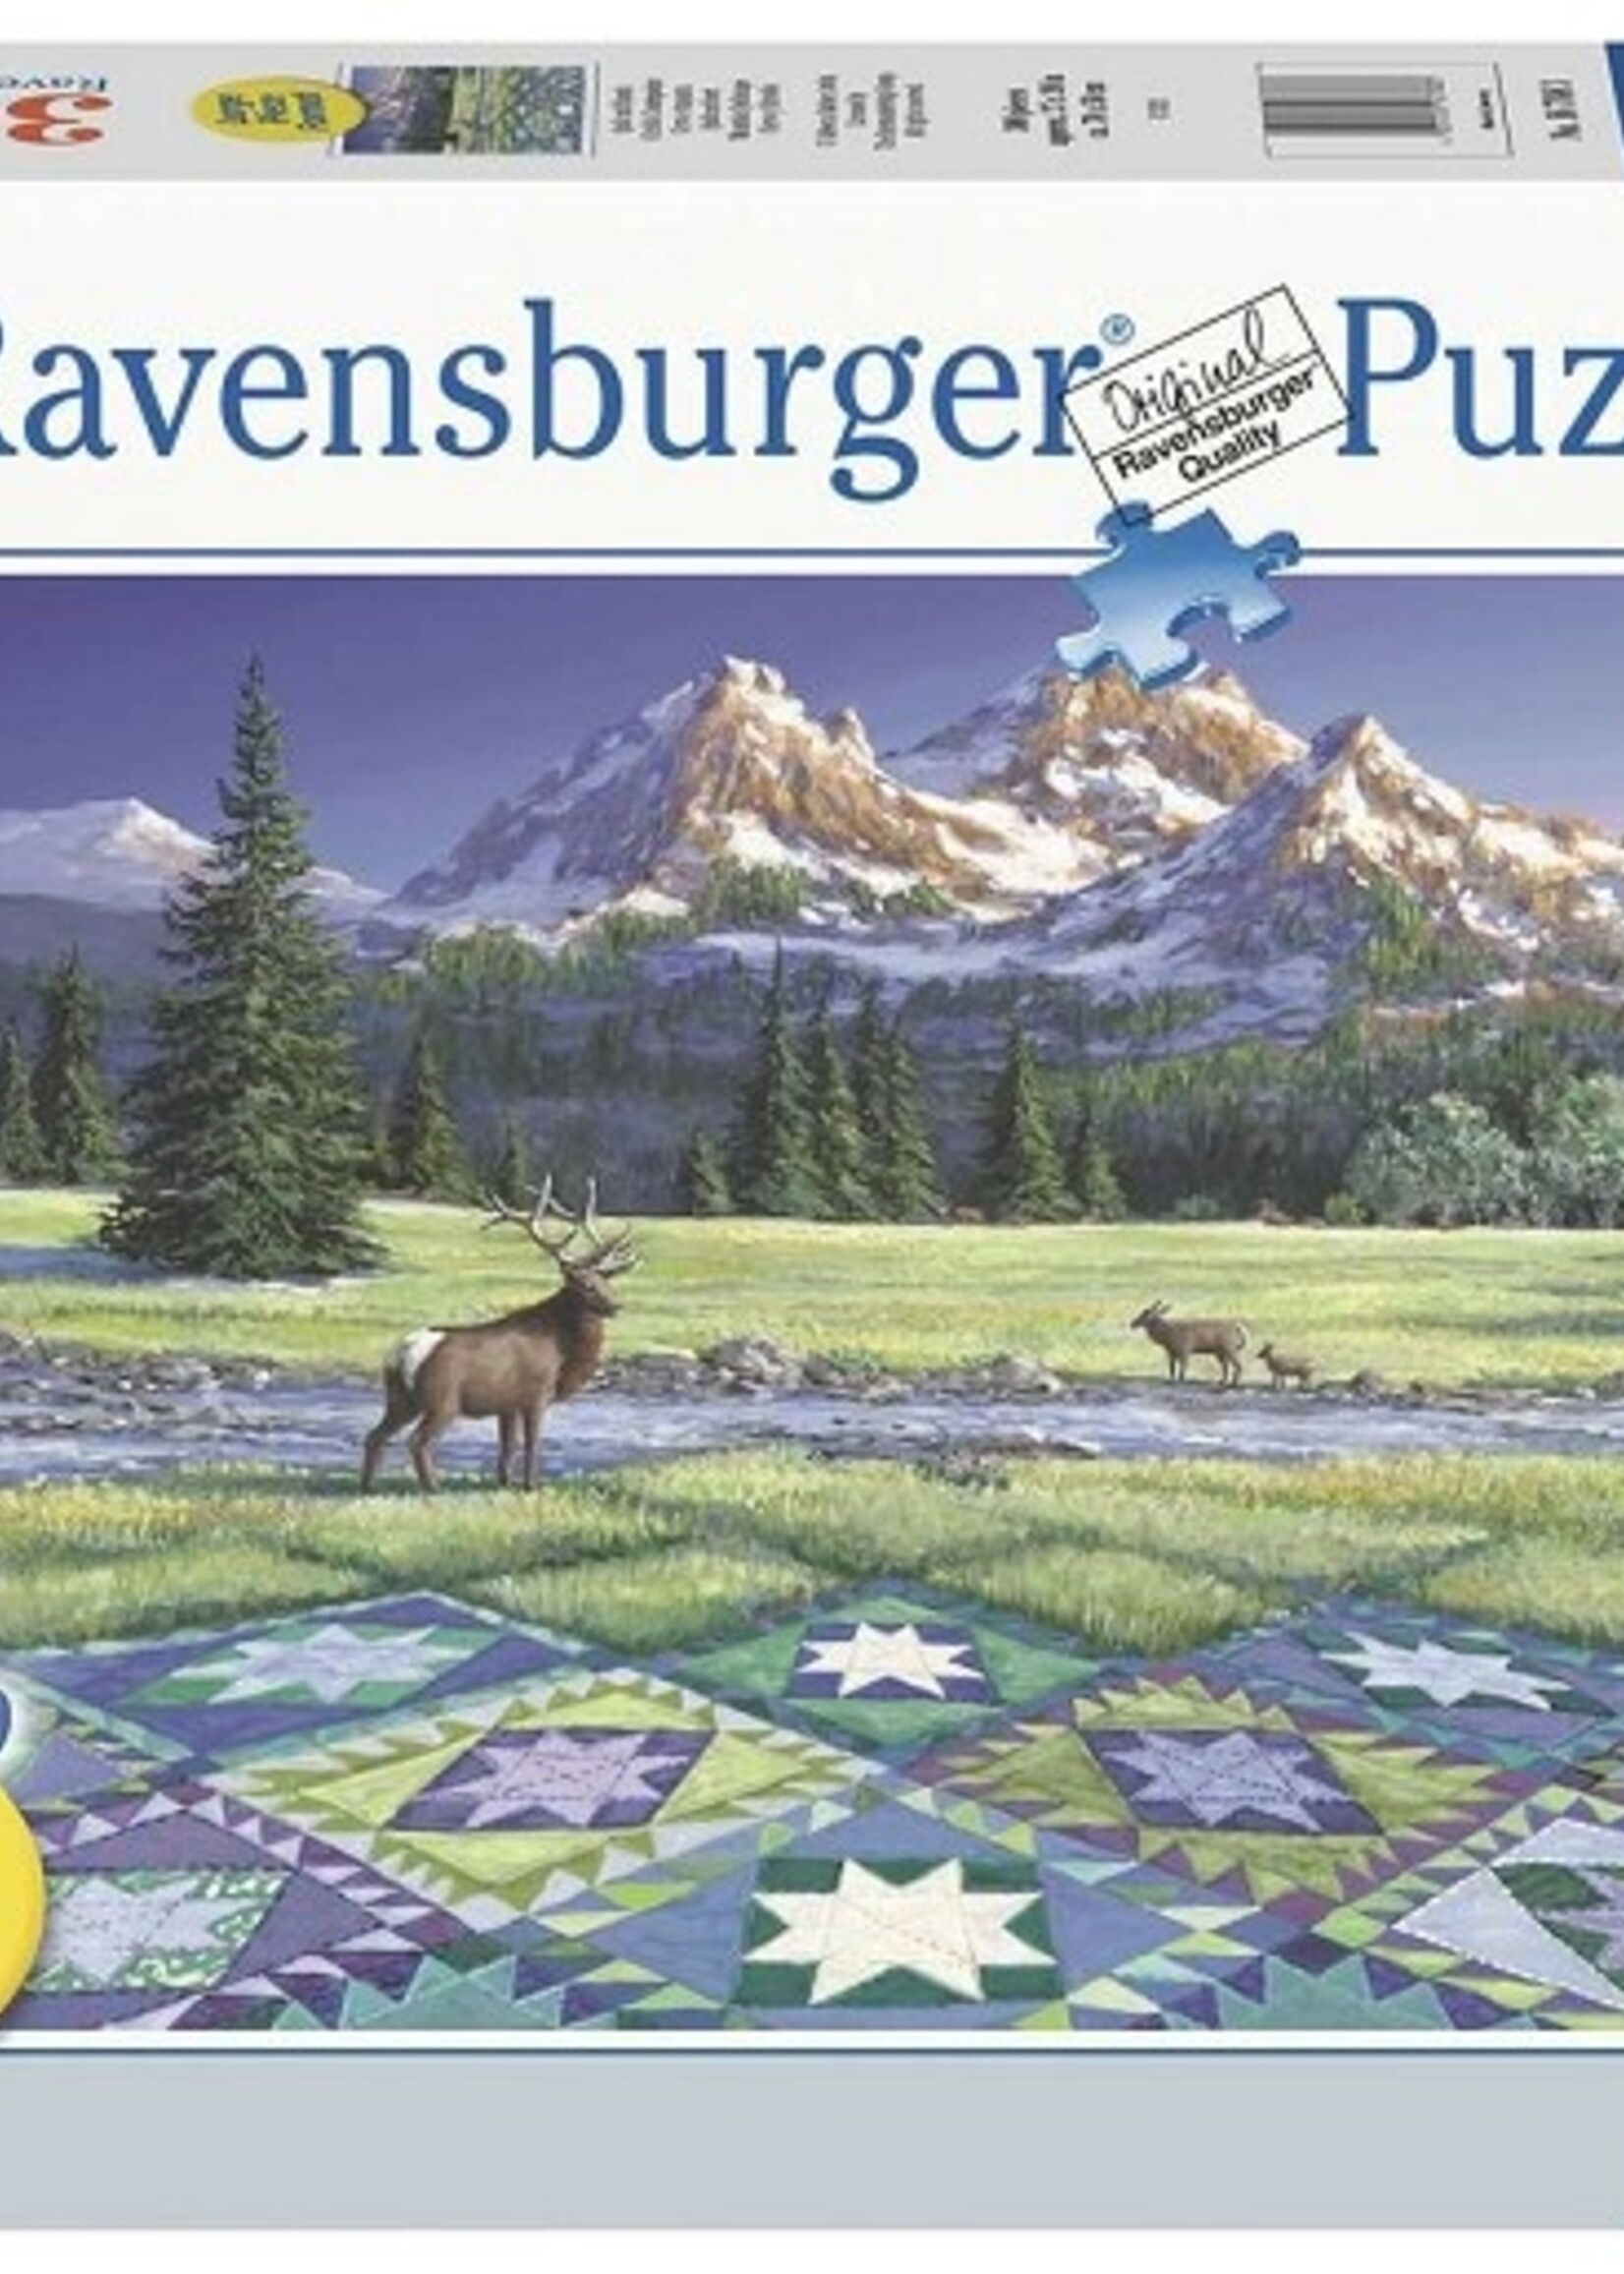 Ravensburger puzzel Quiltscape 300 stukjes